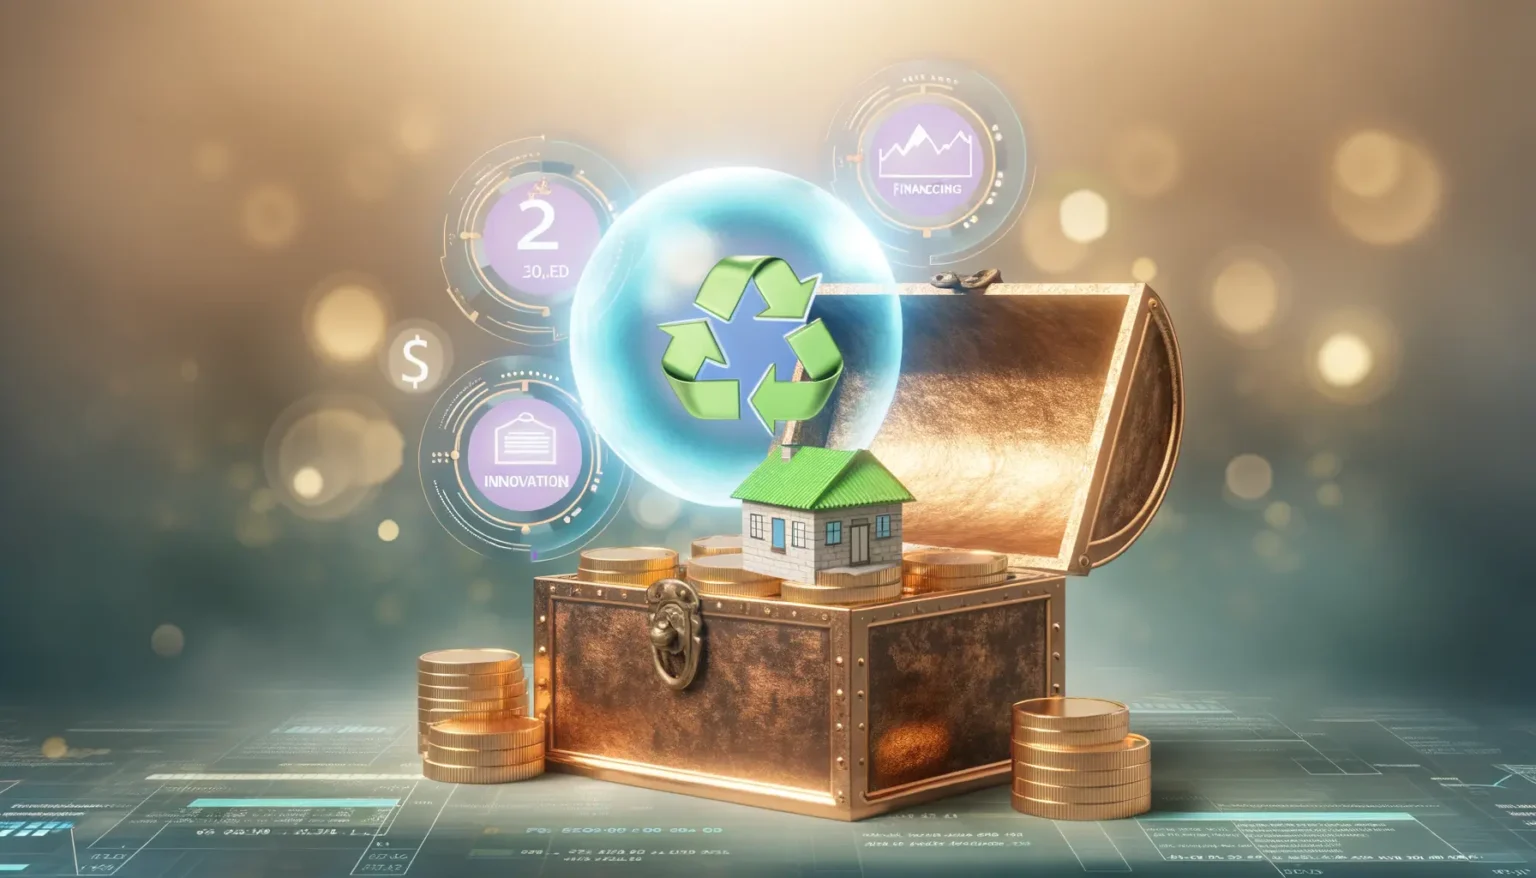 Eine Miniaturhaus-Modell auf einer alten Schatztruhe umgeben von Münzstapeln, überladen mit einer recyclebaren Weltkugel, auf einem digitalen Hintergrund mit grafischen Darstellungen von Finanz- und Innovationkonzepten.